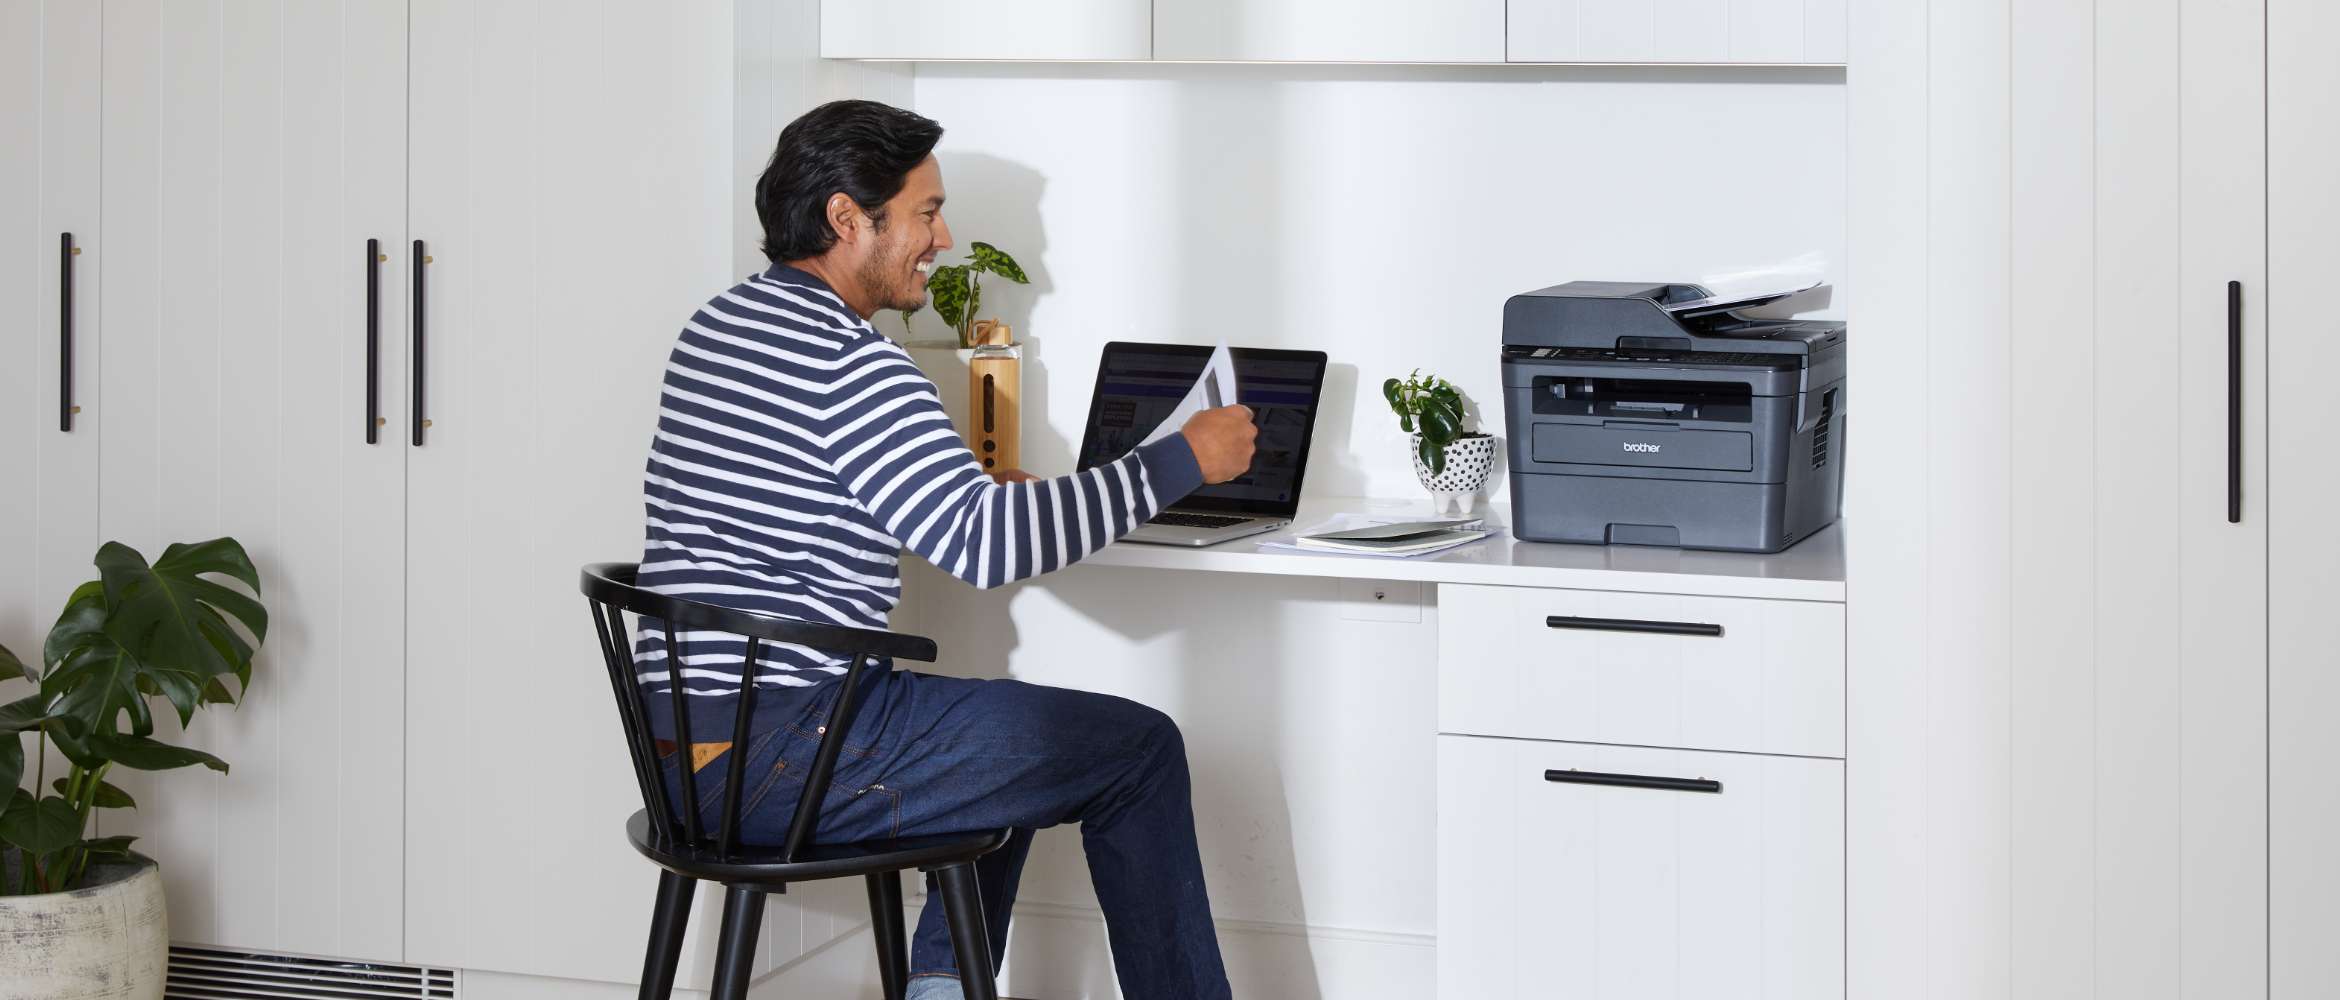 En mann sitter på hjemmekontor og printer dokumenter på en Brother skriver